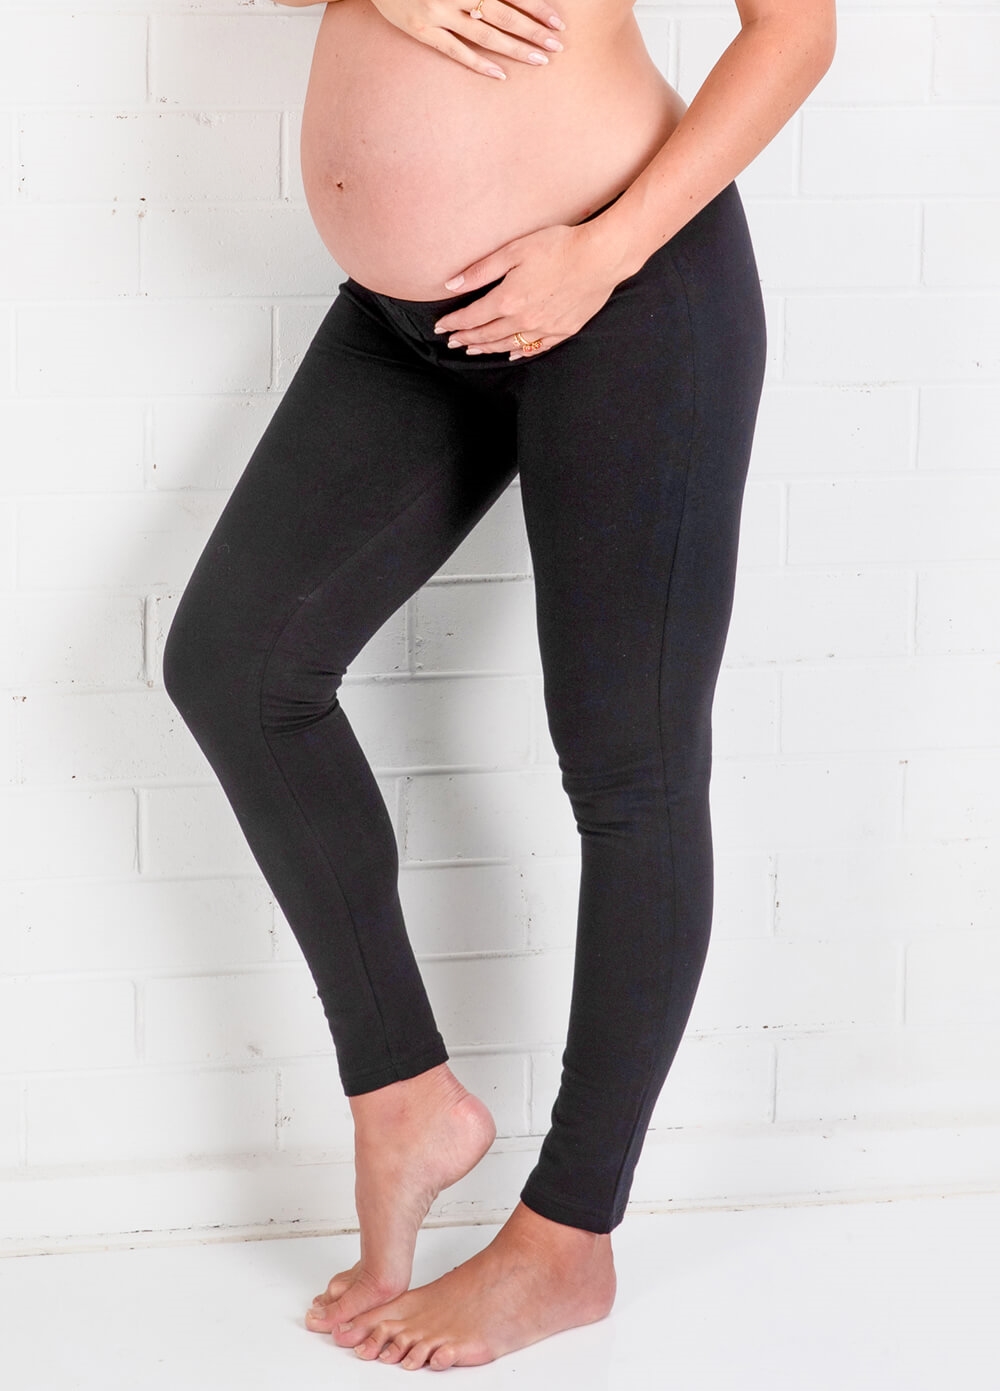 Oasis Winter Fleece Maternity Leggings in Black by Trimester